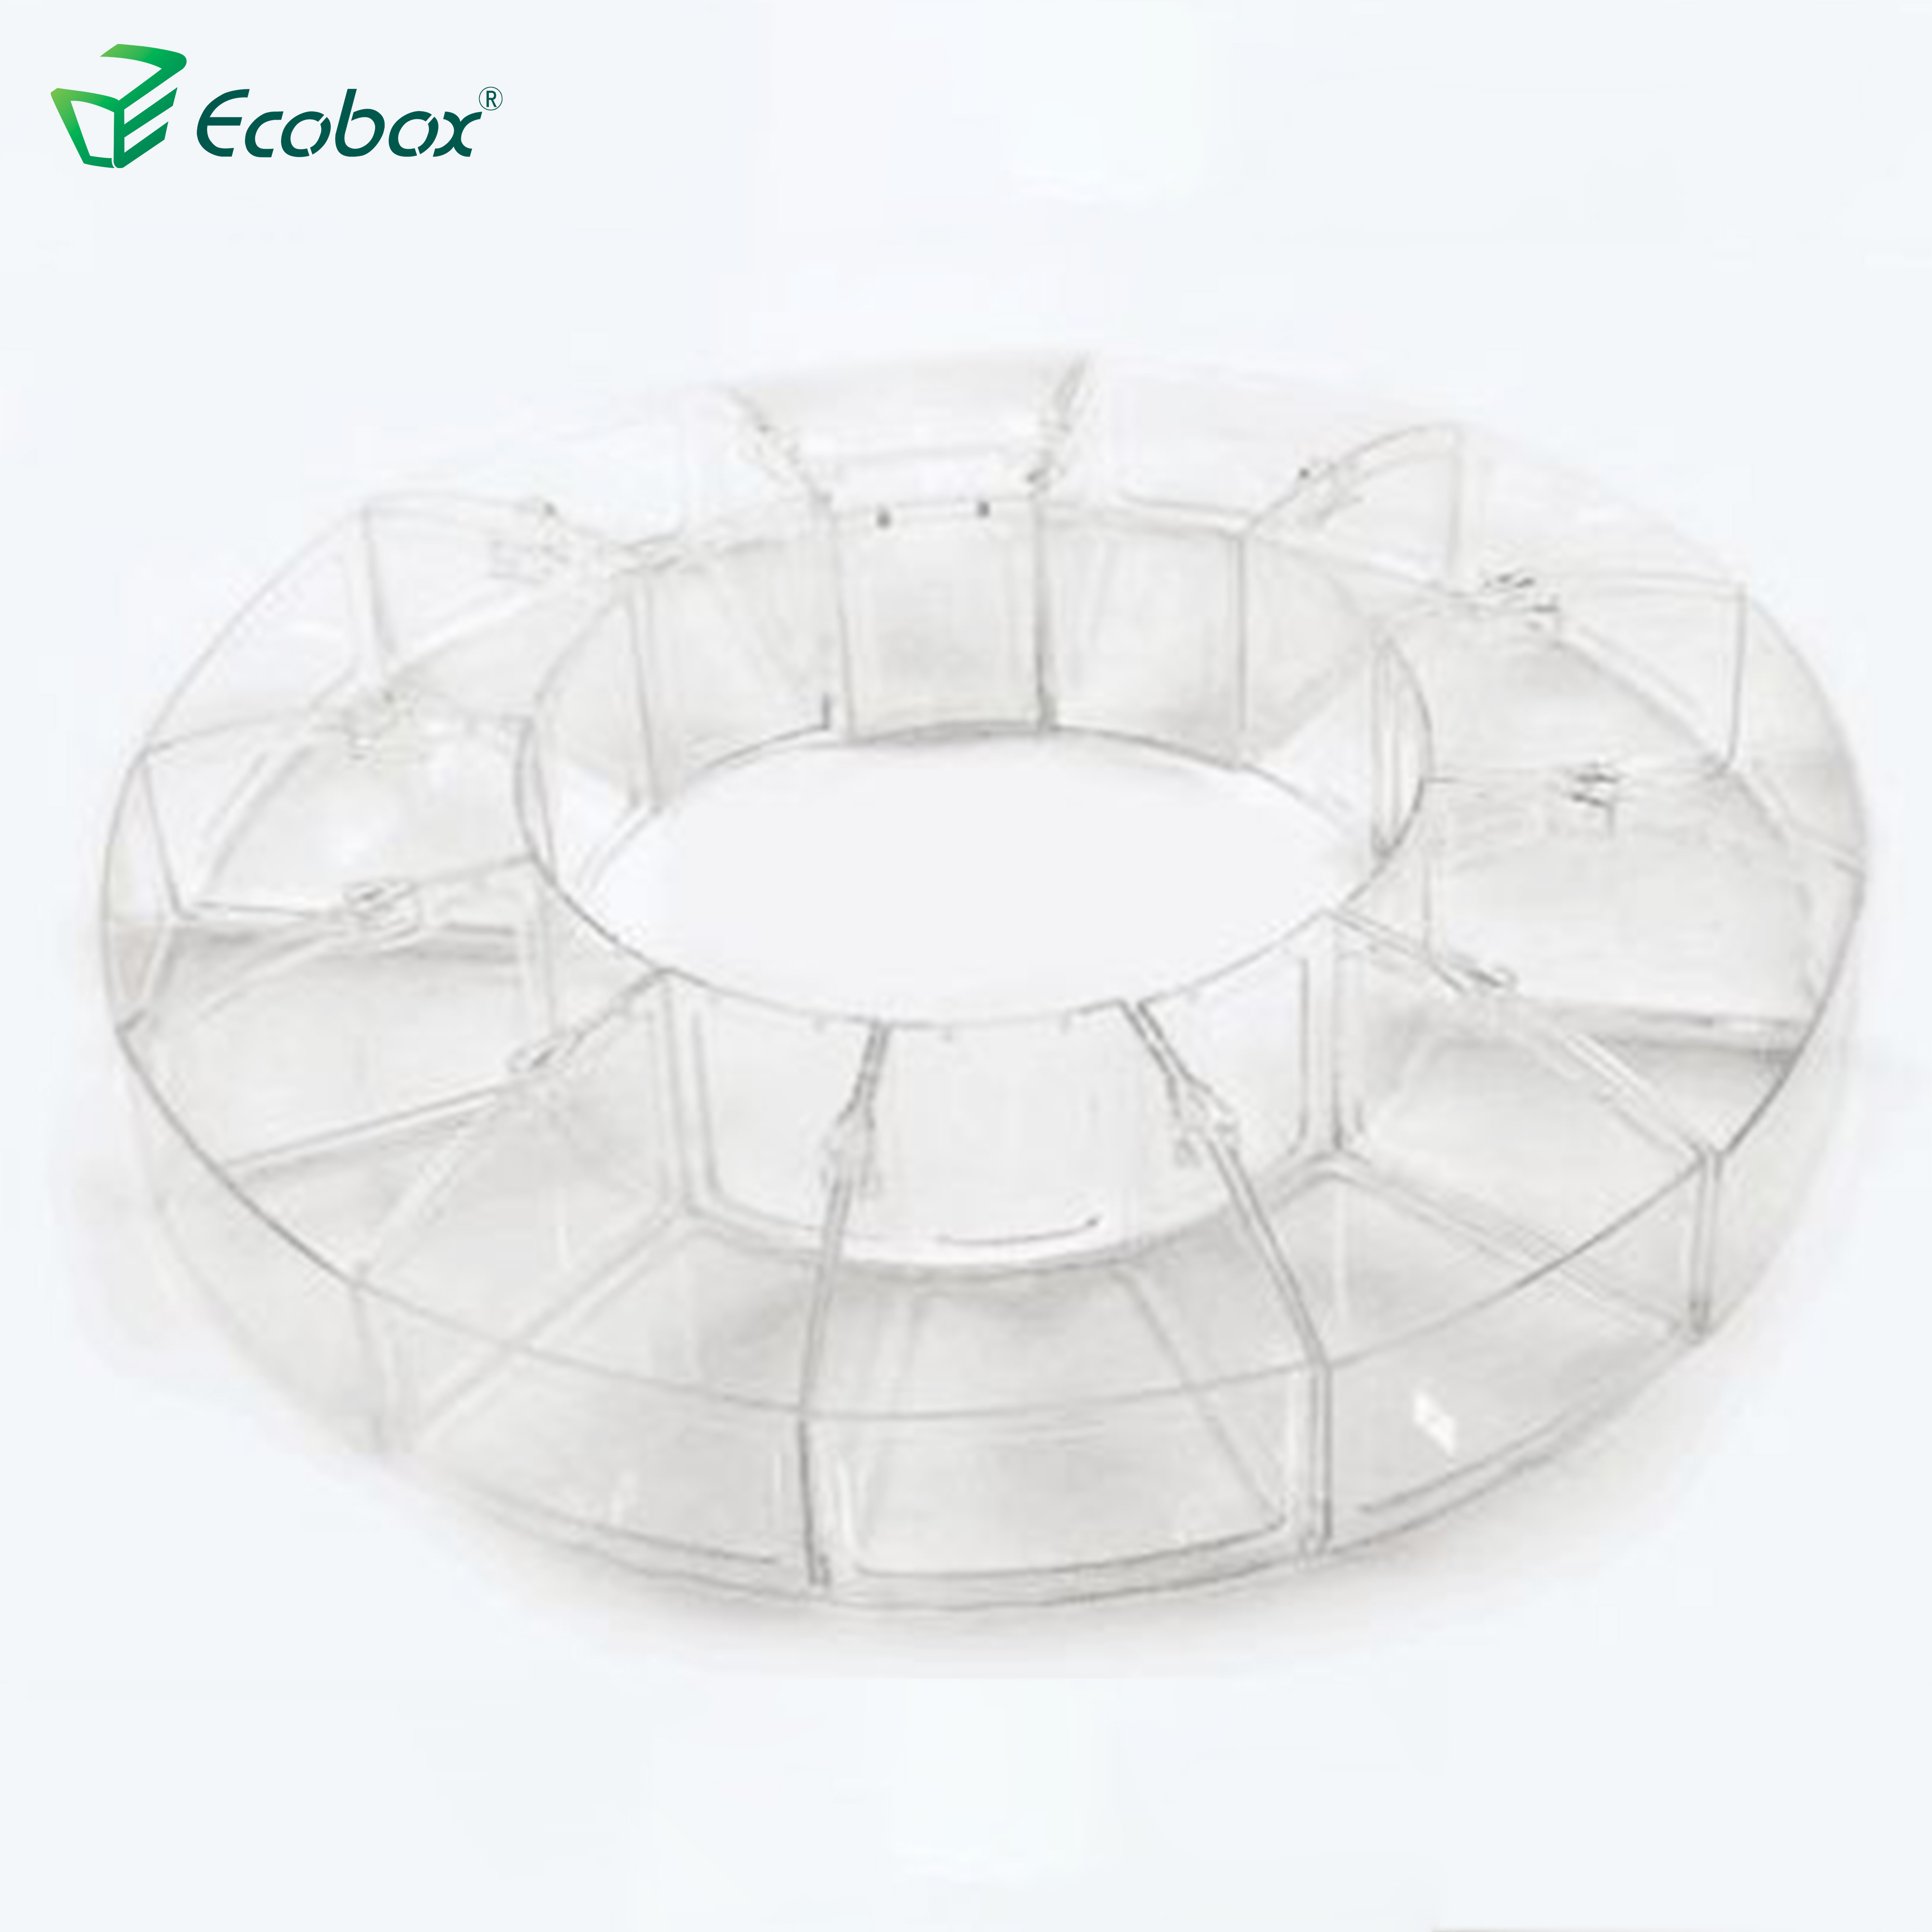 Ecobox SPH-009 Arc shape bulk food bin for supermarket food industrial